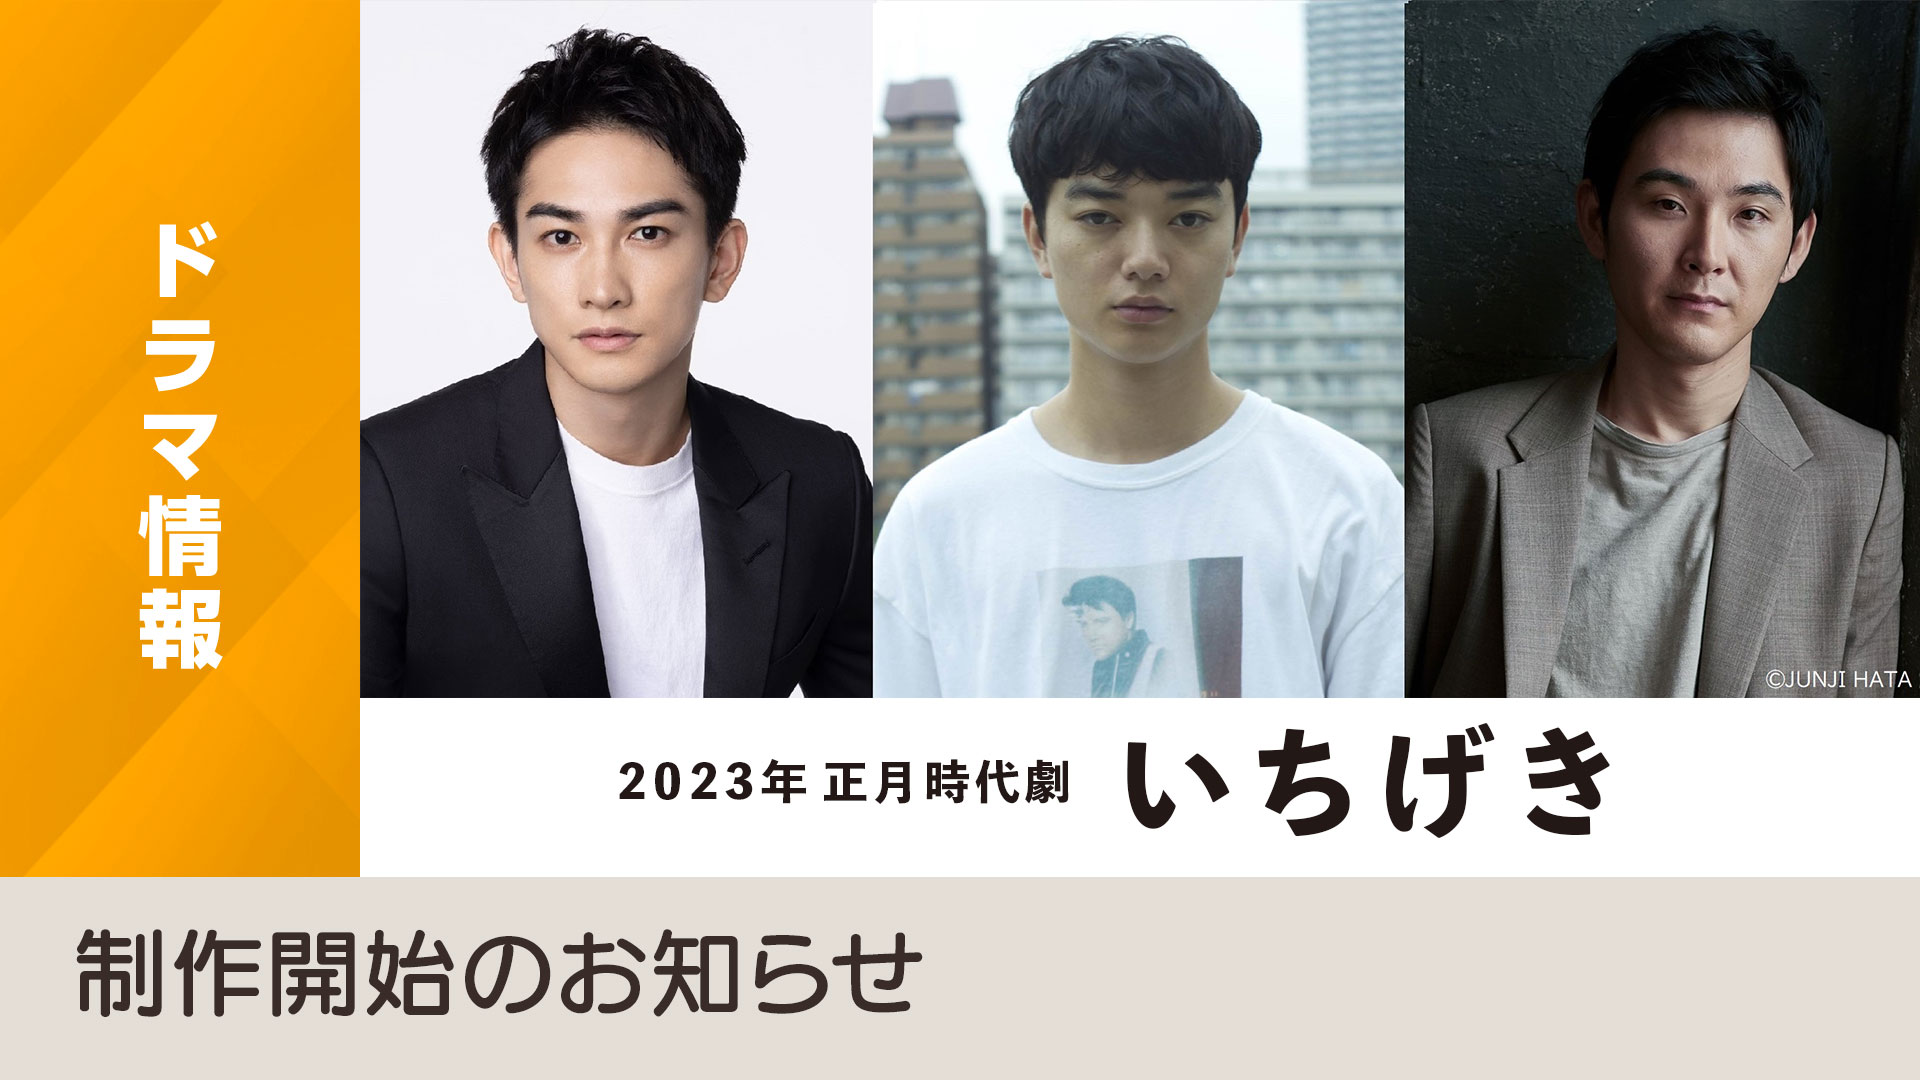 [情報] NHK 2023年正月時代劇「いちげき」